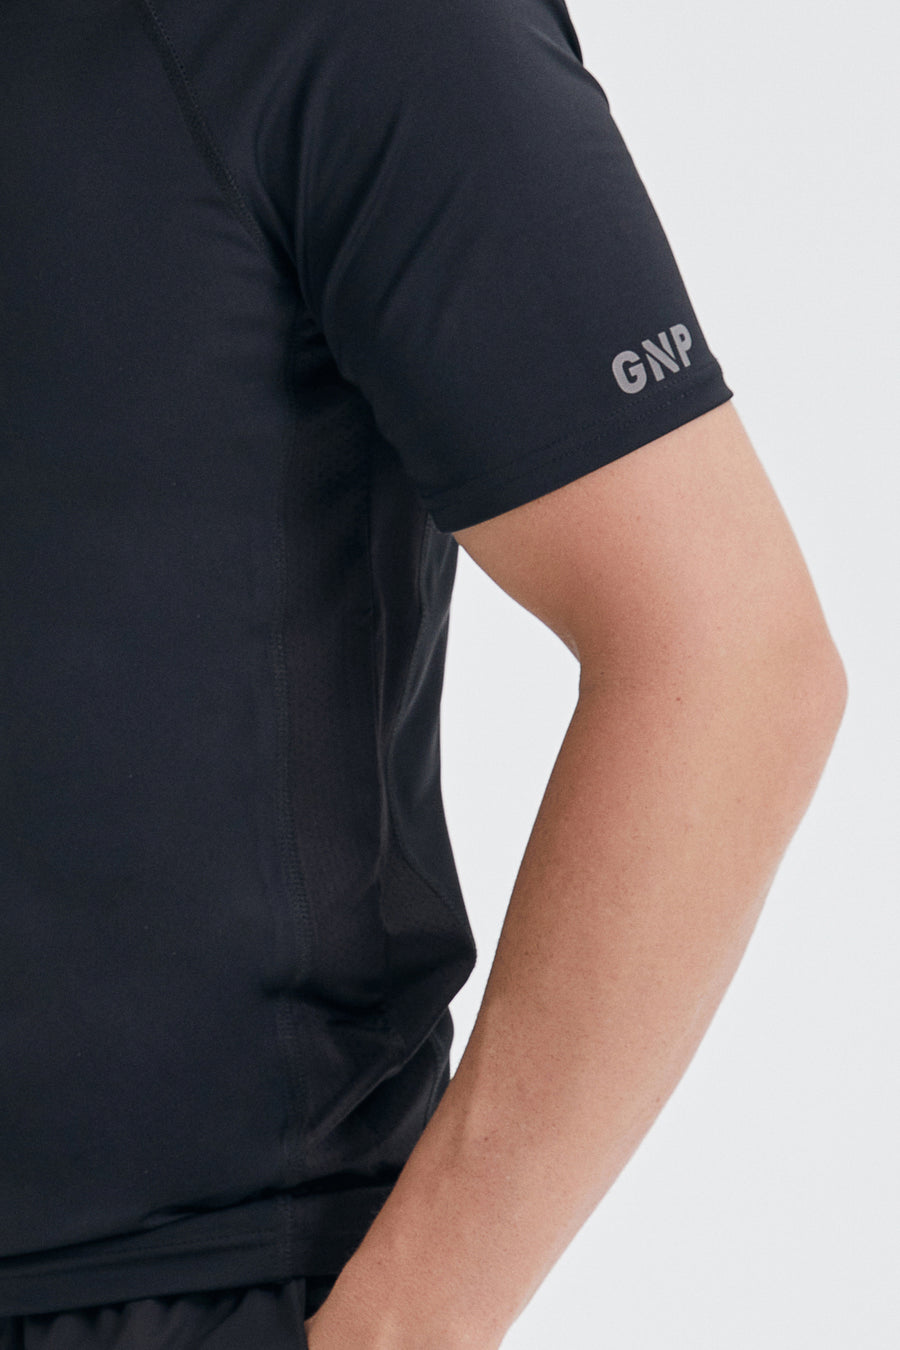 GNP Short Sleeve Training T-shirt